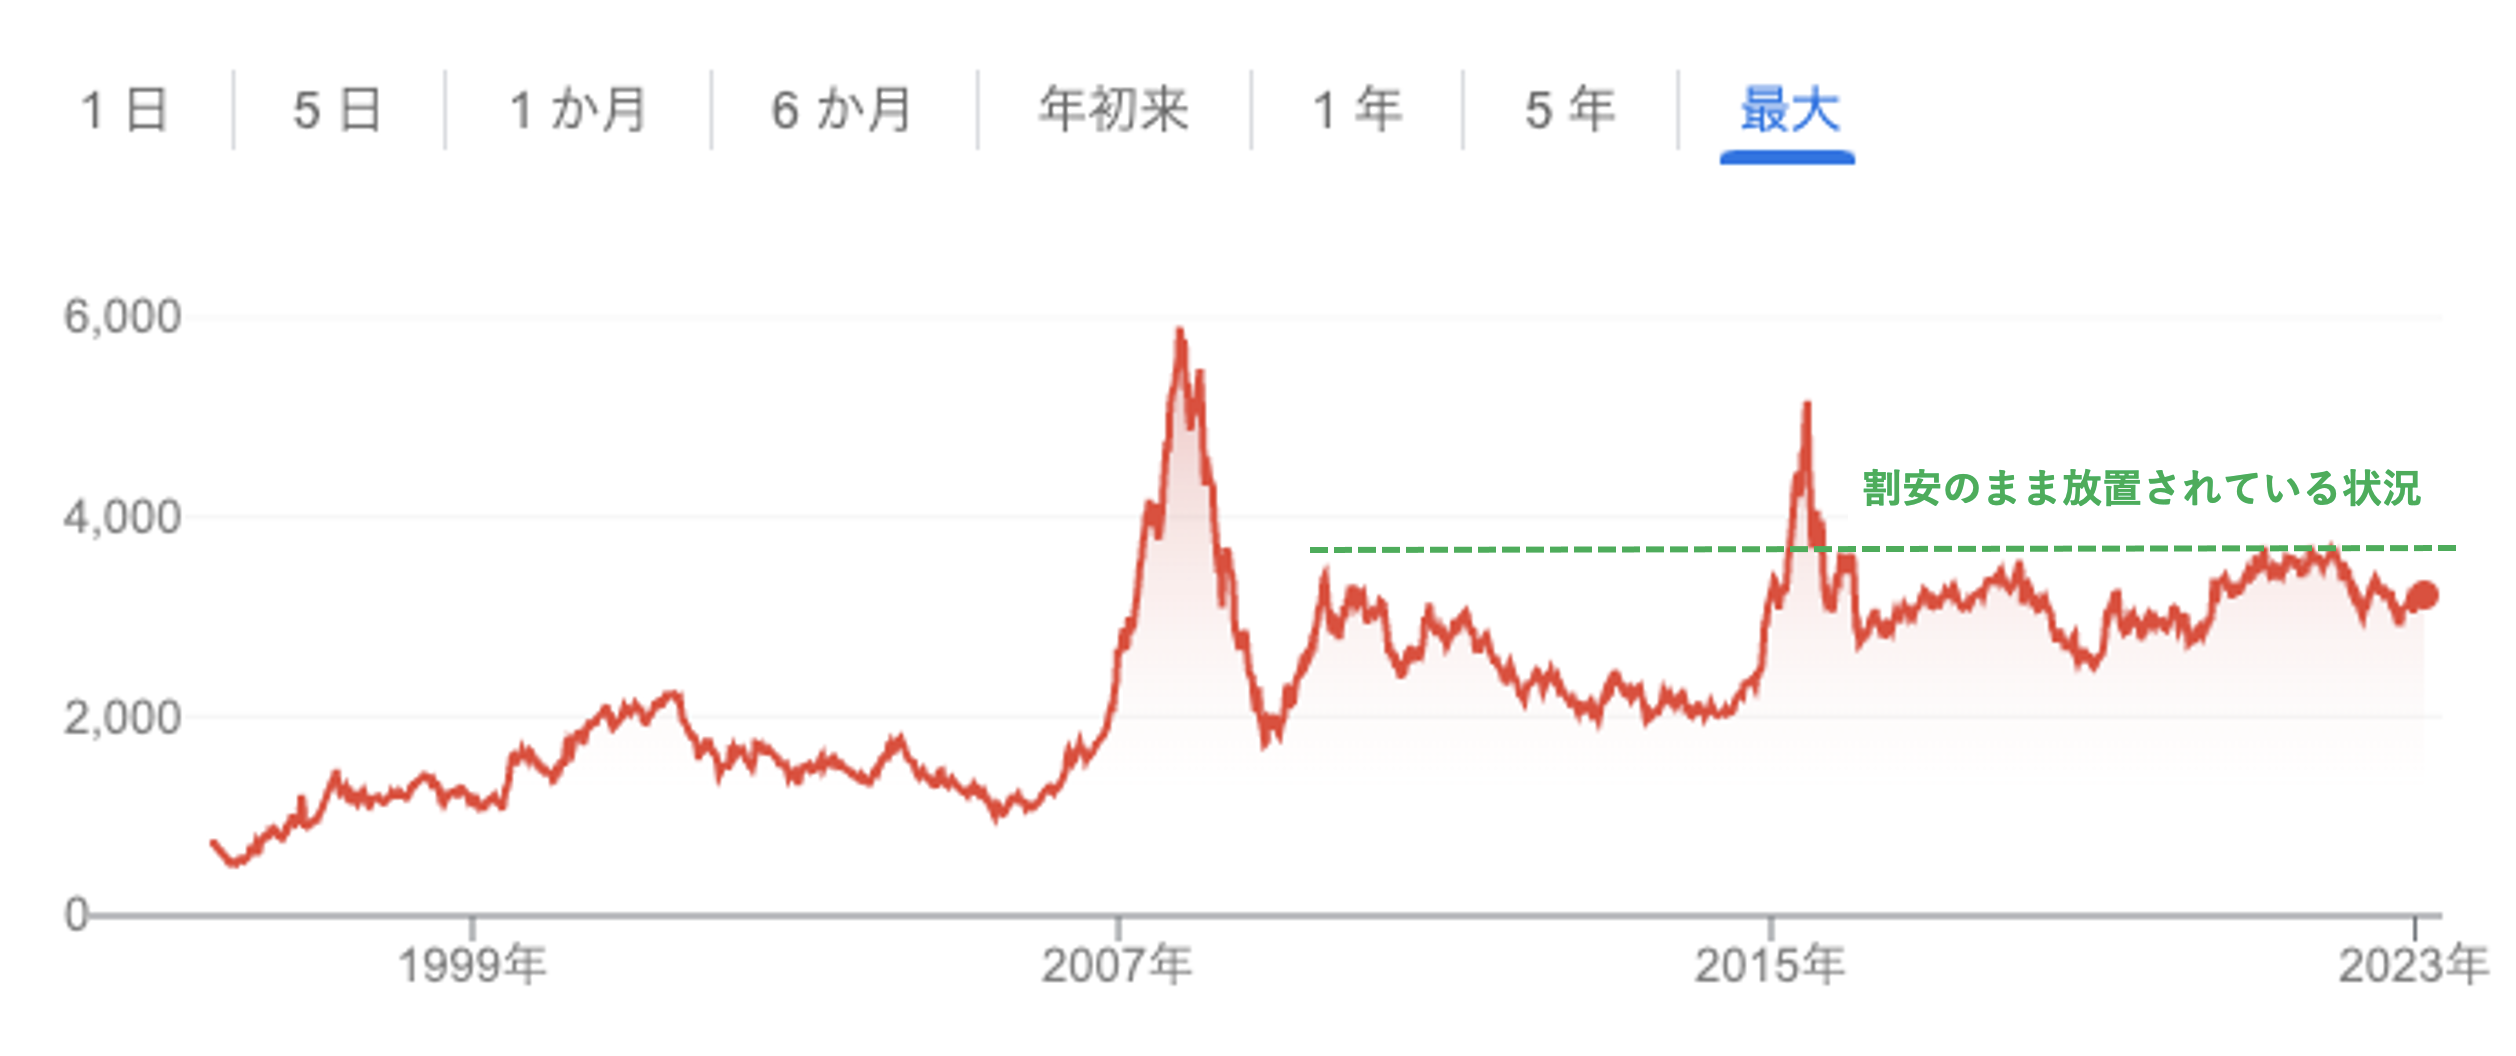 上海総合指数の推移